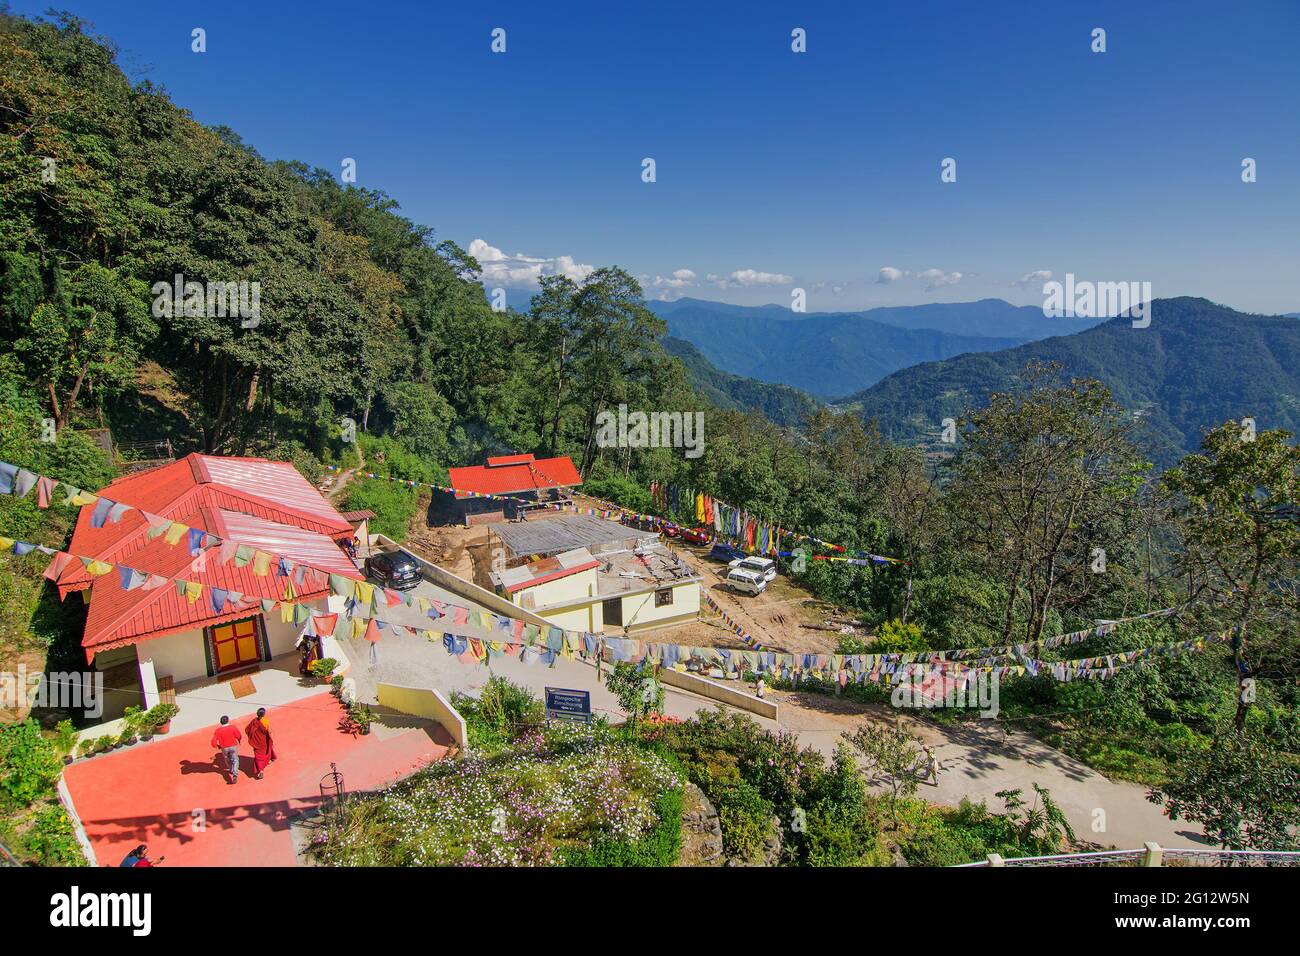 Un beau monastère bouddhiste ensoleillé - Samdruptse à la ville de Ravangla, Sikkim, Inde. Ciel bleu nuageux au-dessus et montagnes de l'Himalaya en arrière-plan. Banque D'Images